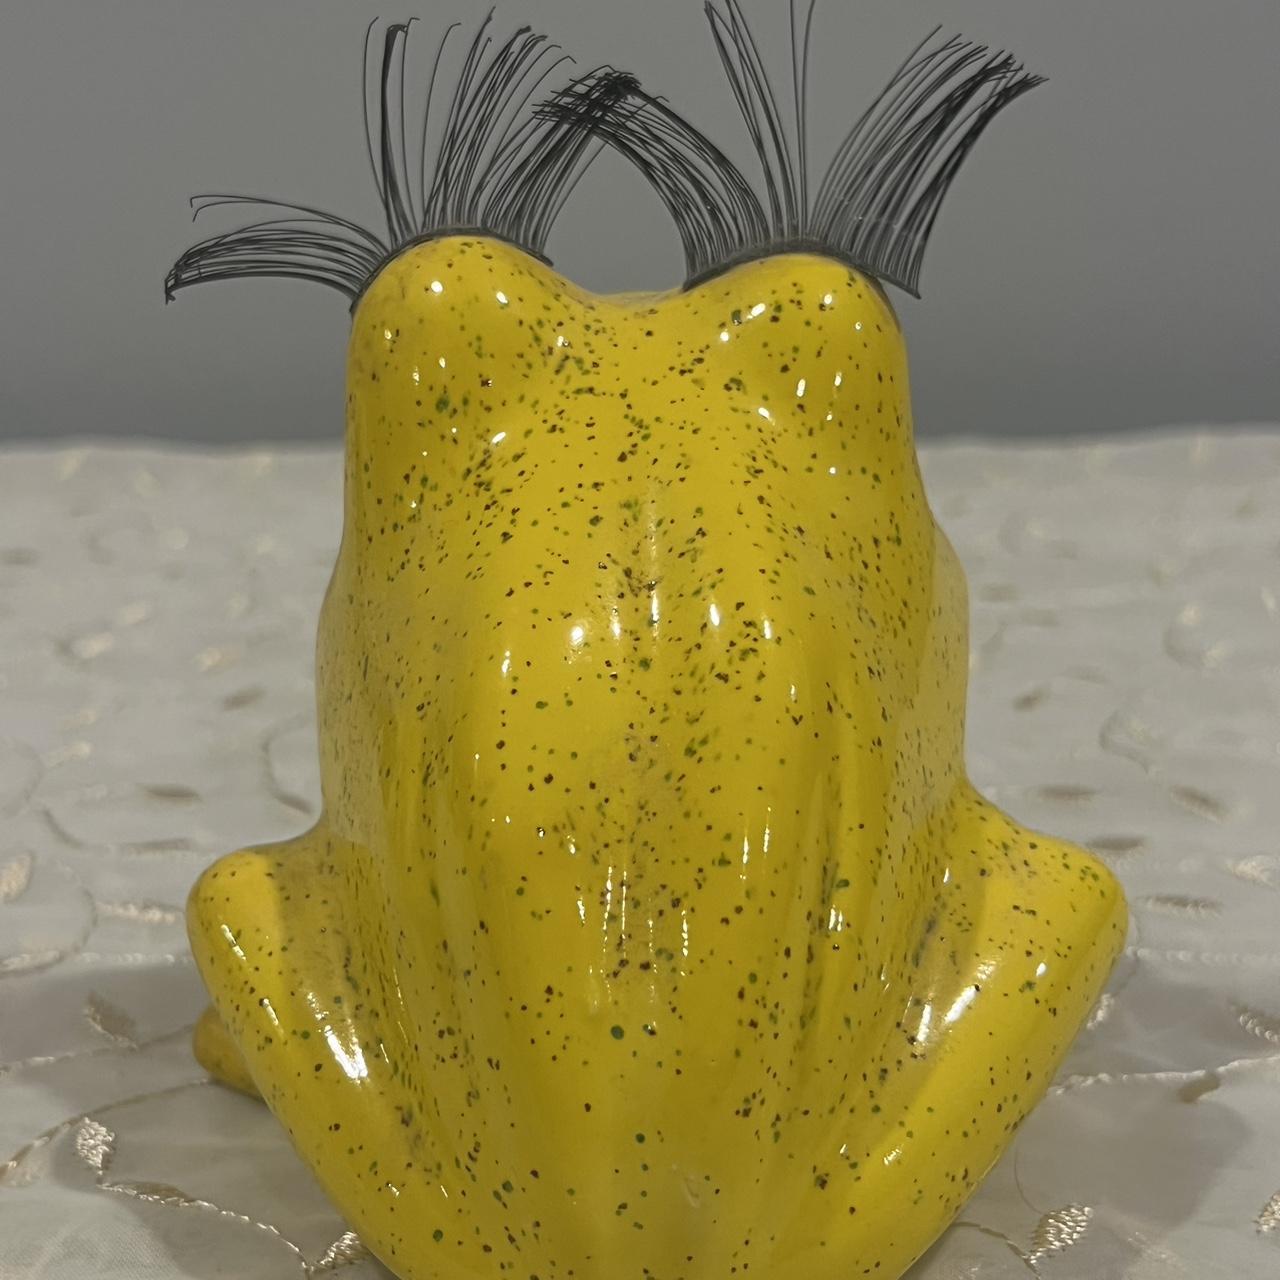 Vintage Yellow Lash Frog Sponge Holder or Home - Depop